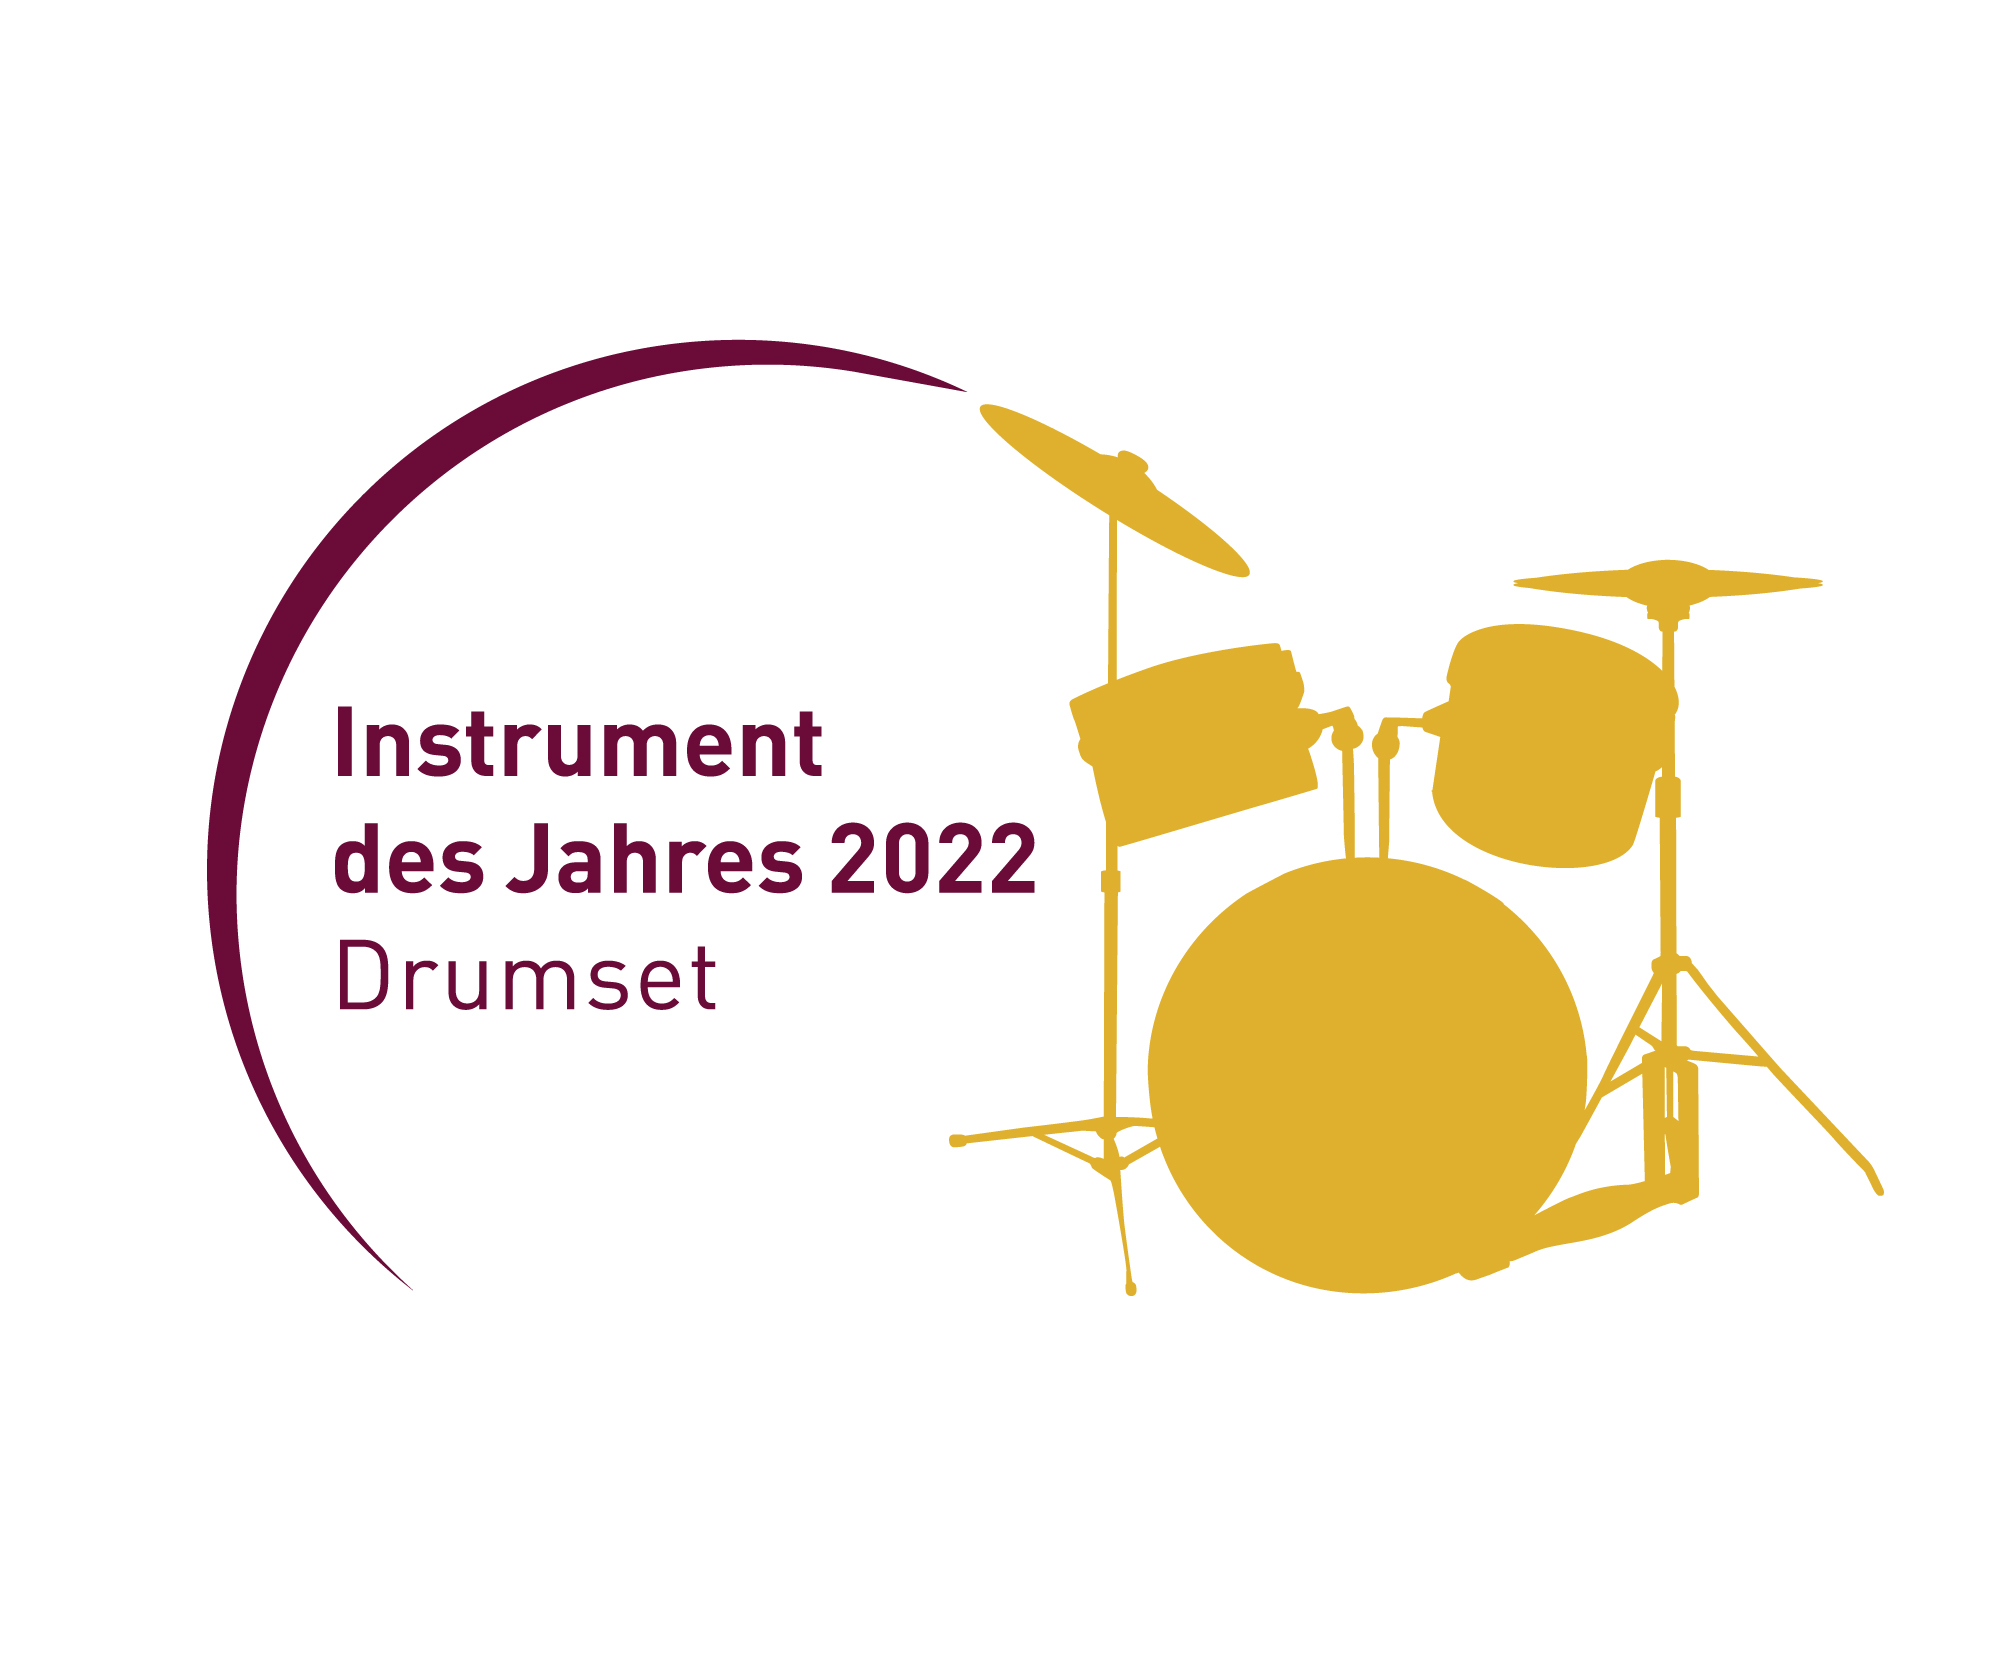 Instrument des Jahres 2022